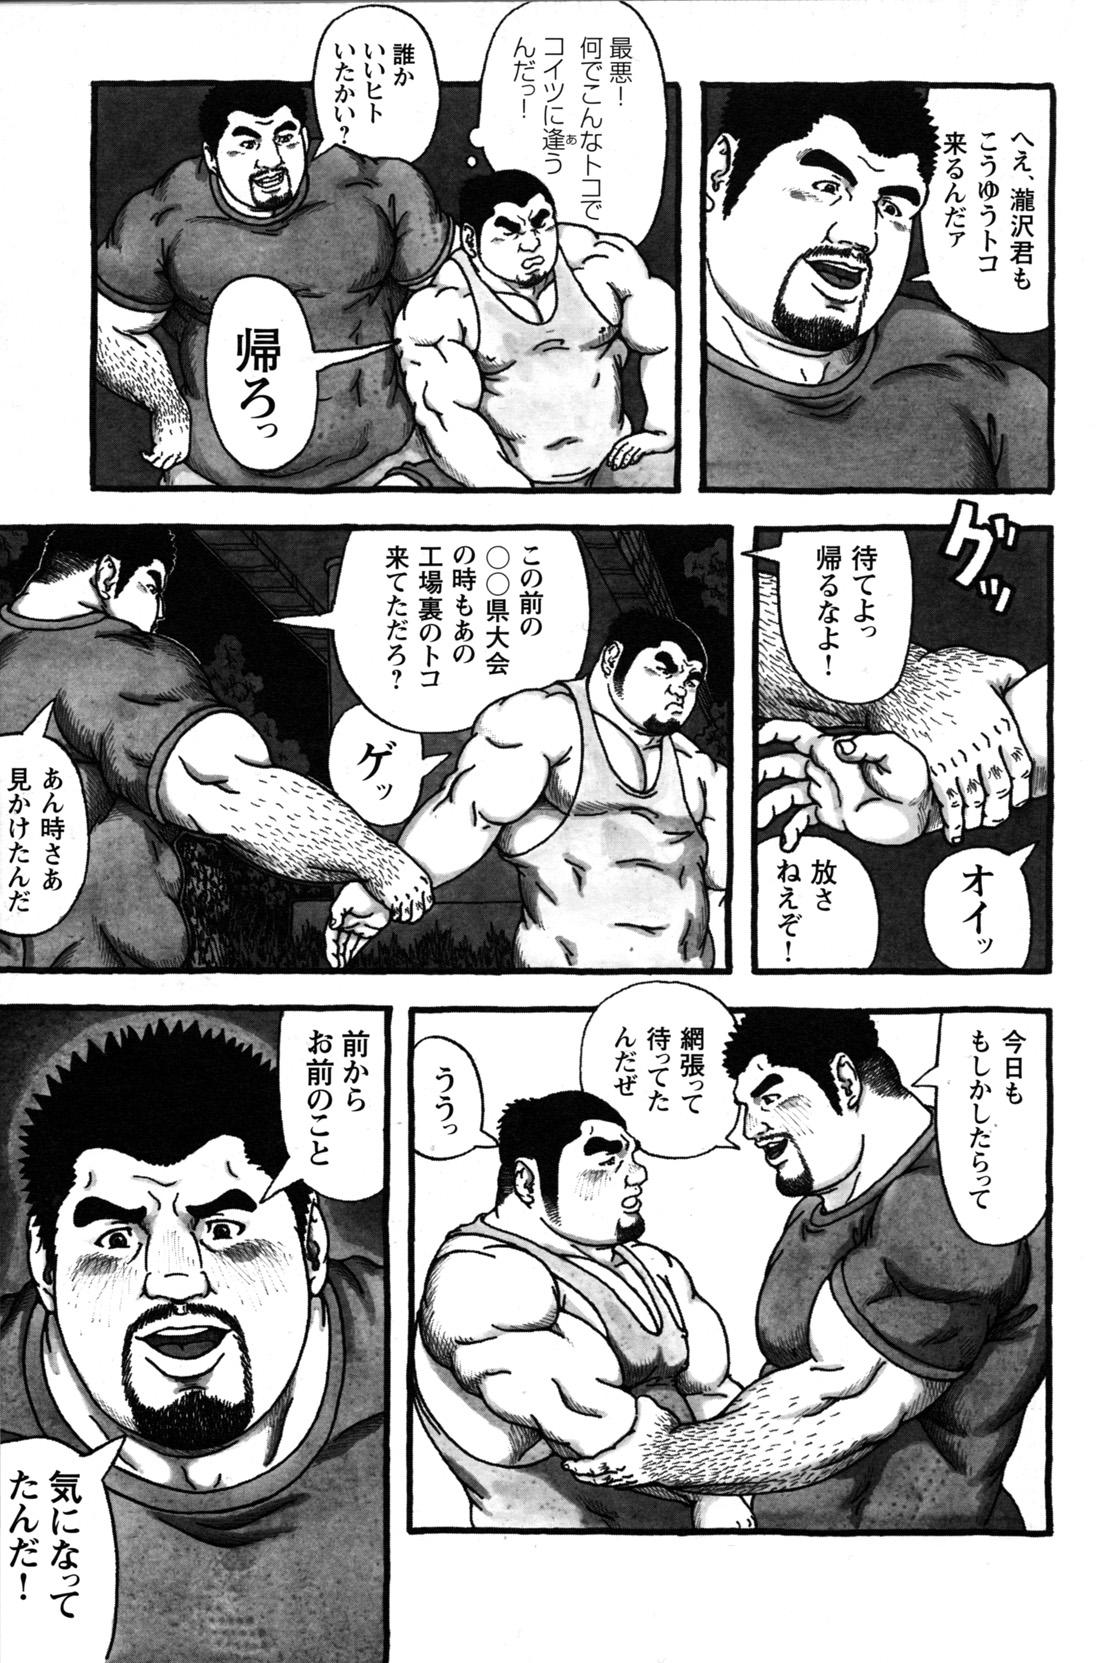 Comic G-men Gaho No.09 Gacchibi Zeme 150